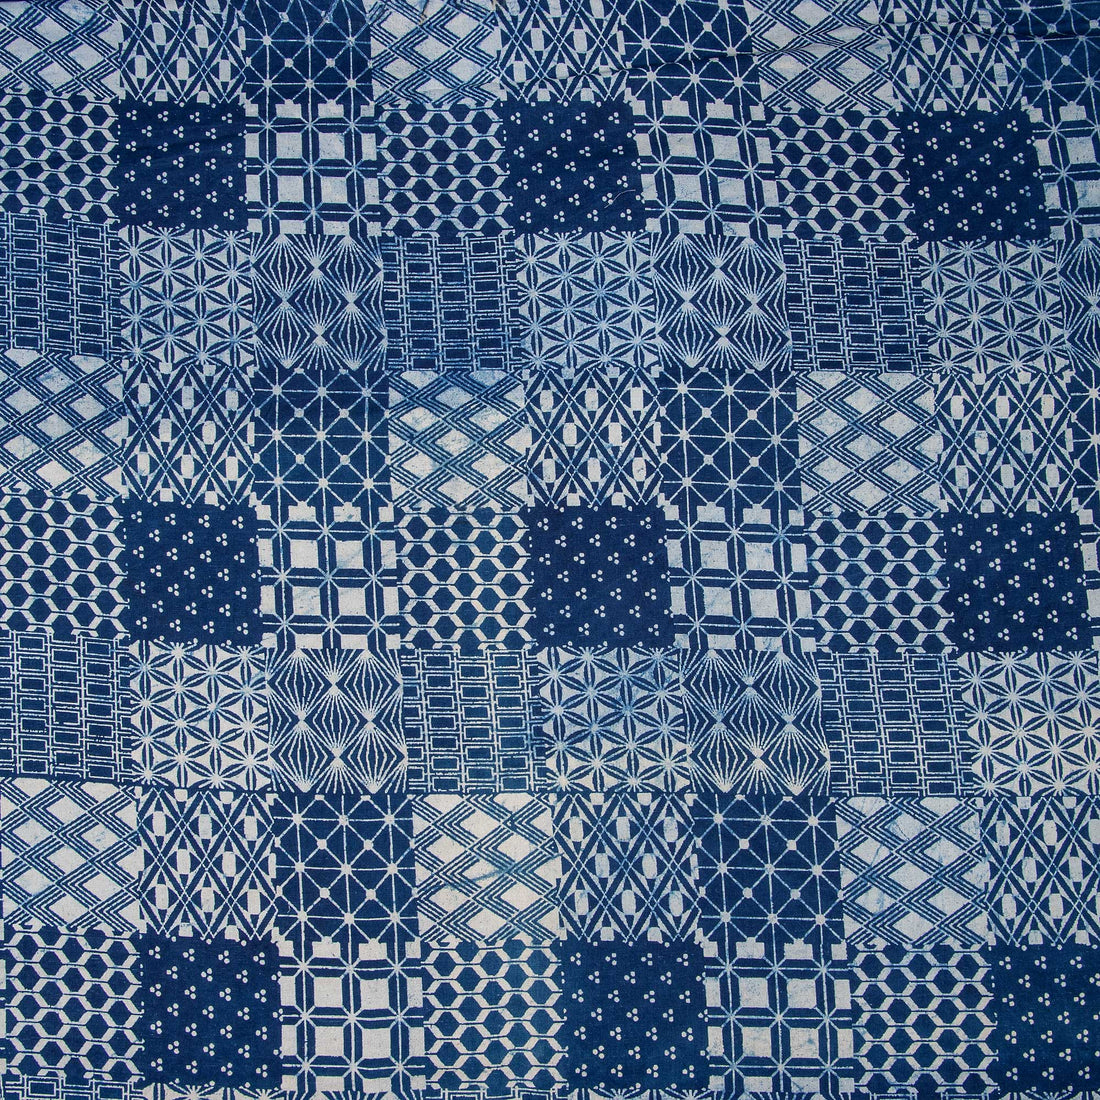 Square Printed Indigo Cotton Fabric Online